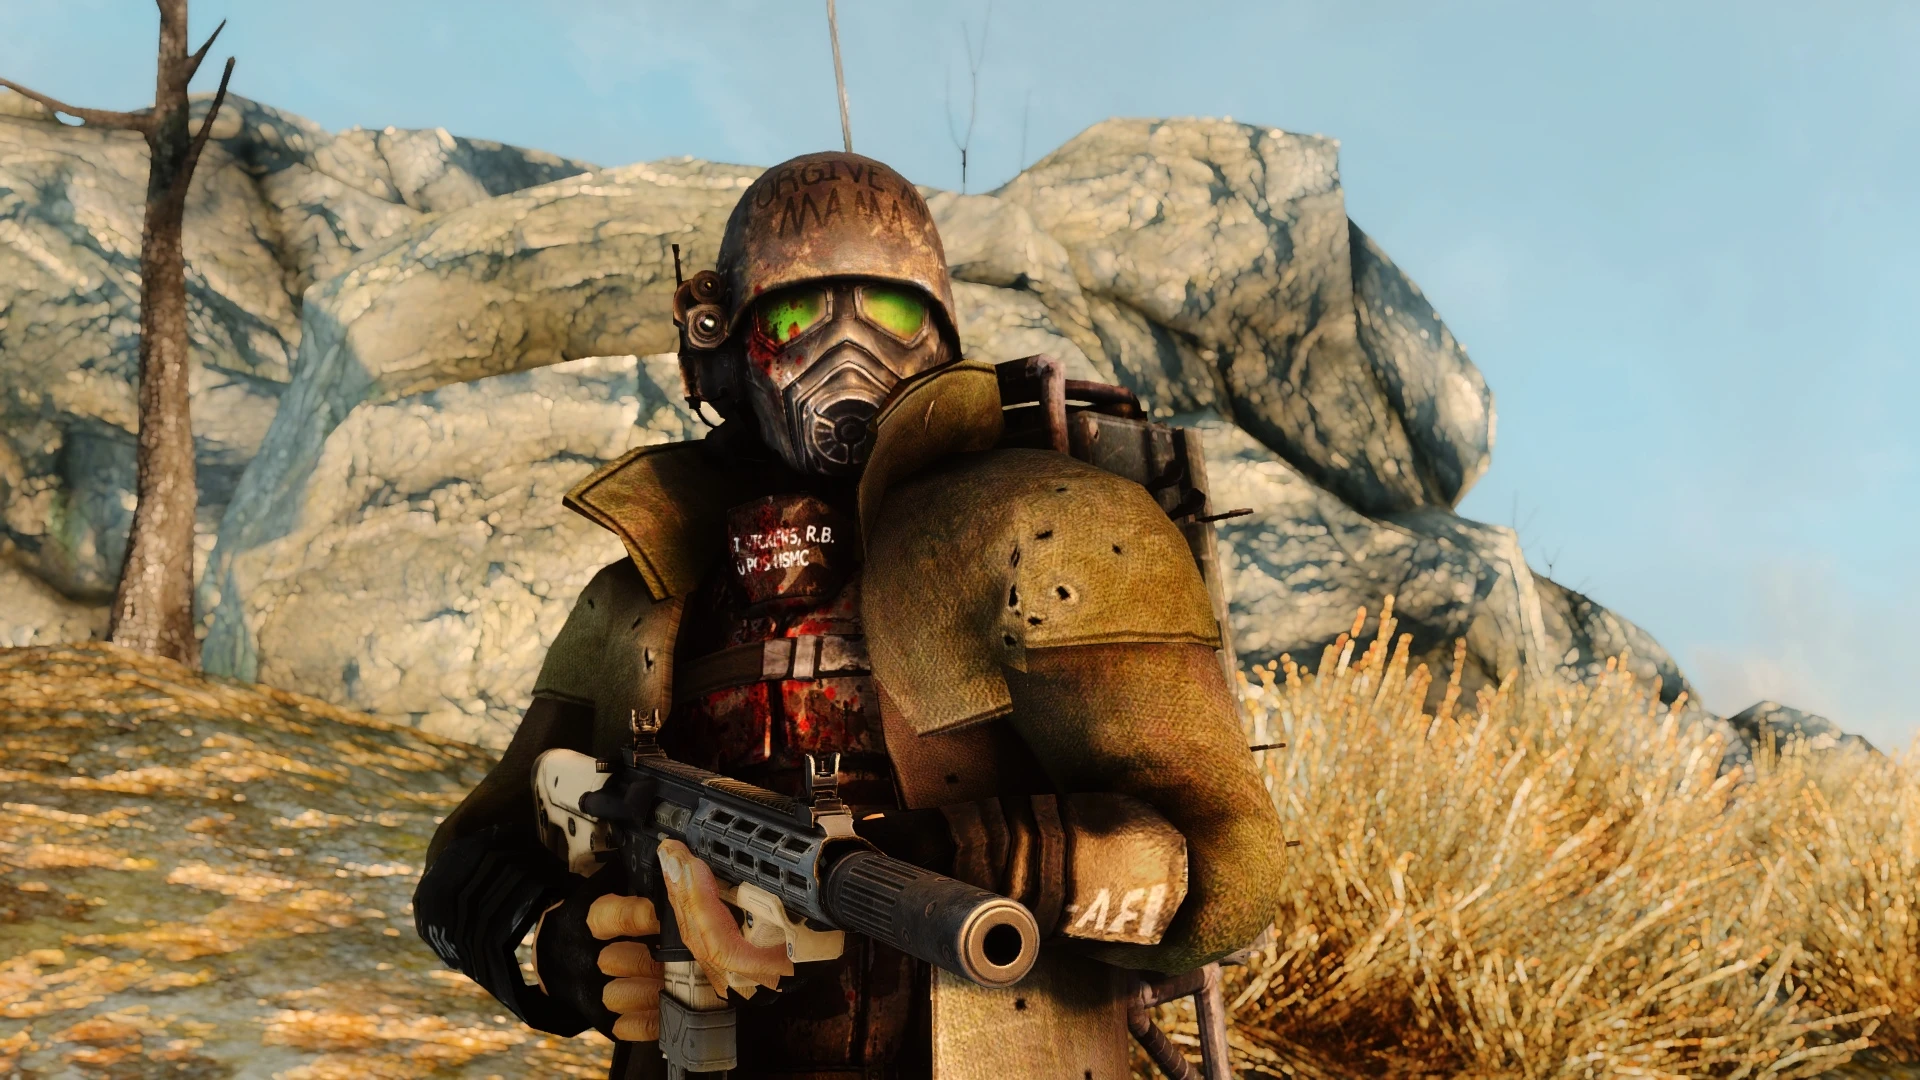 Desert Ranger Armor Retexture for ADAM MODE at Fallout New Vegas mods. www....